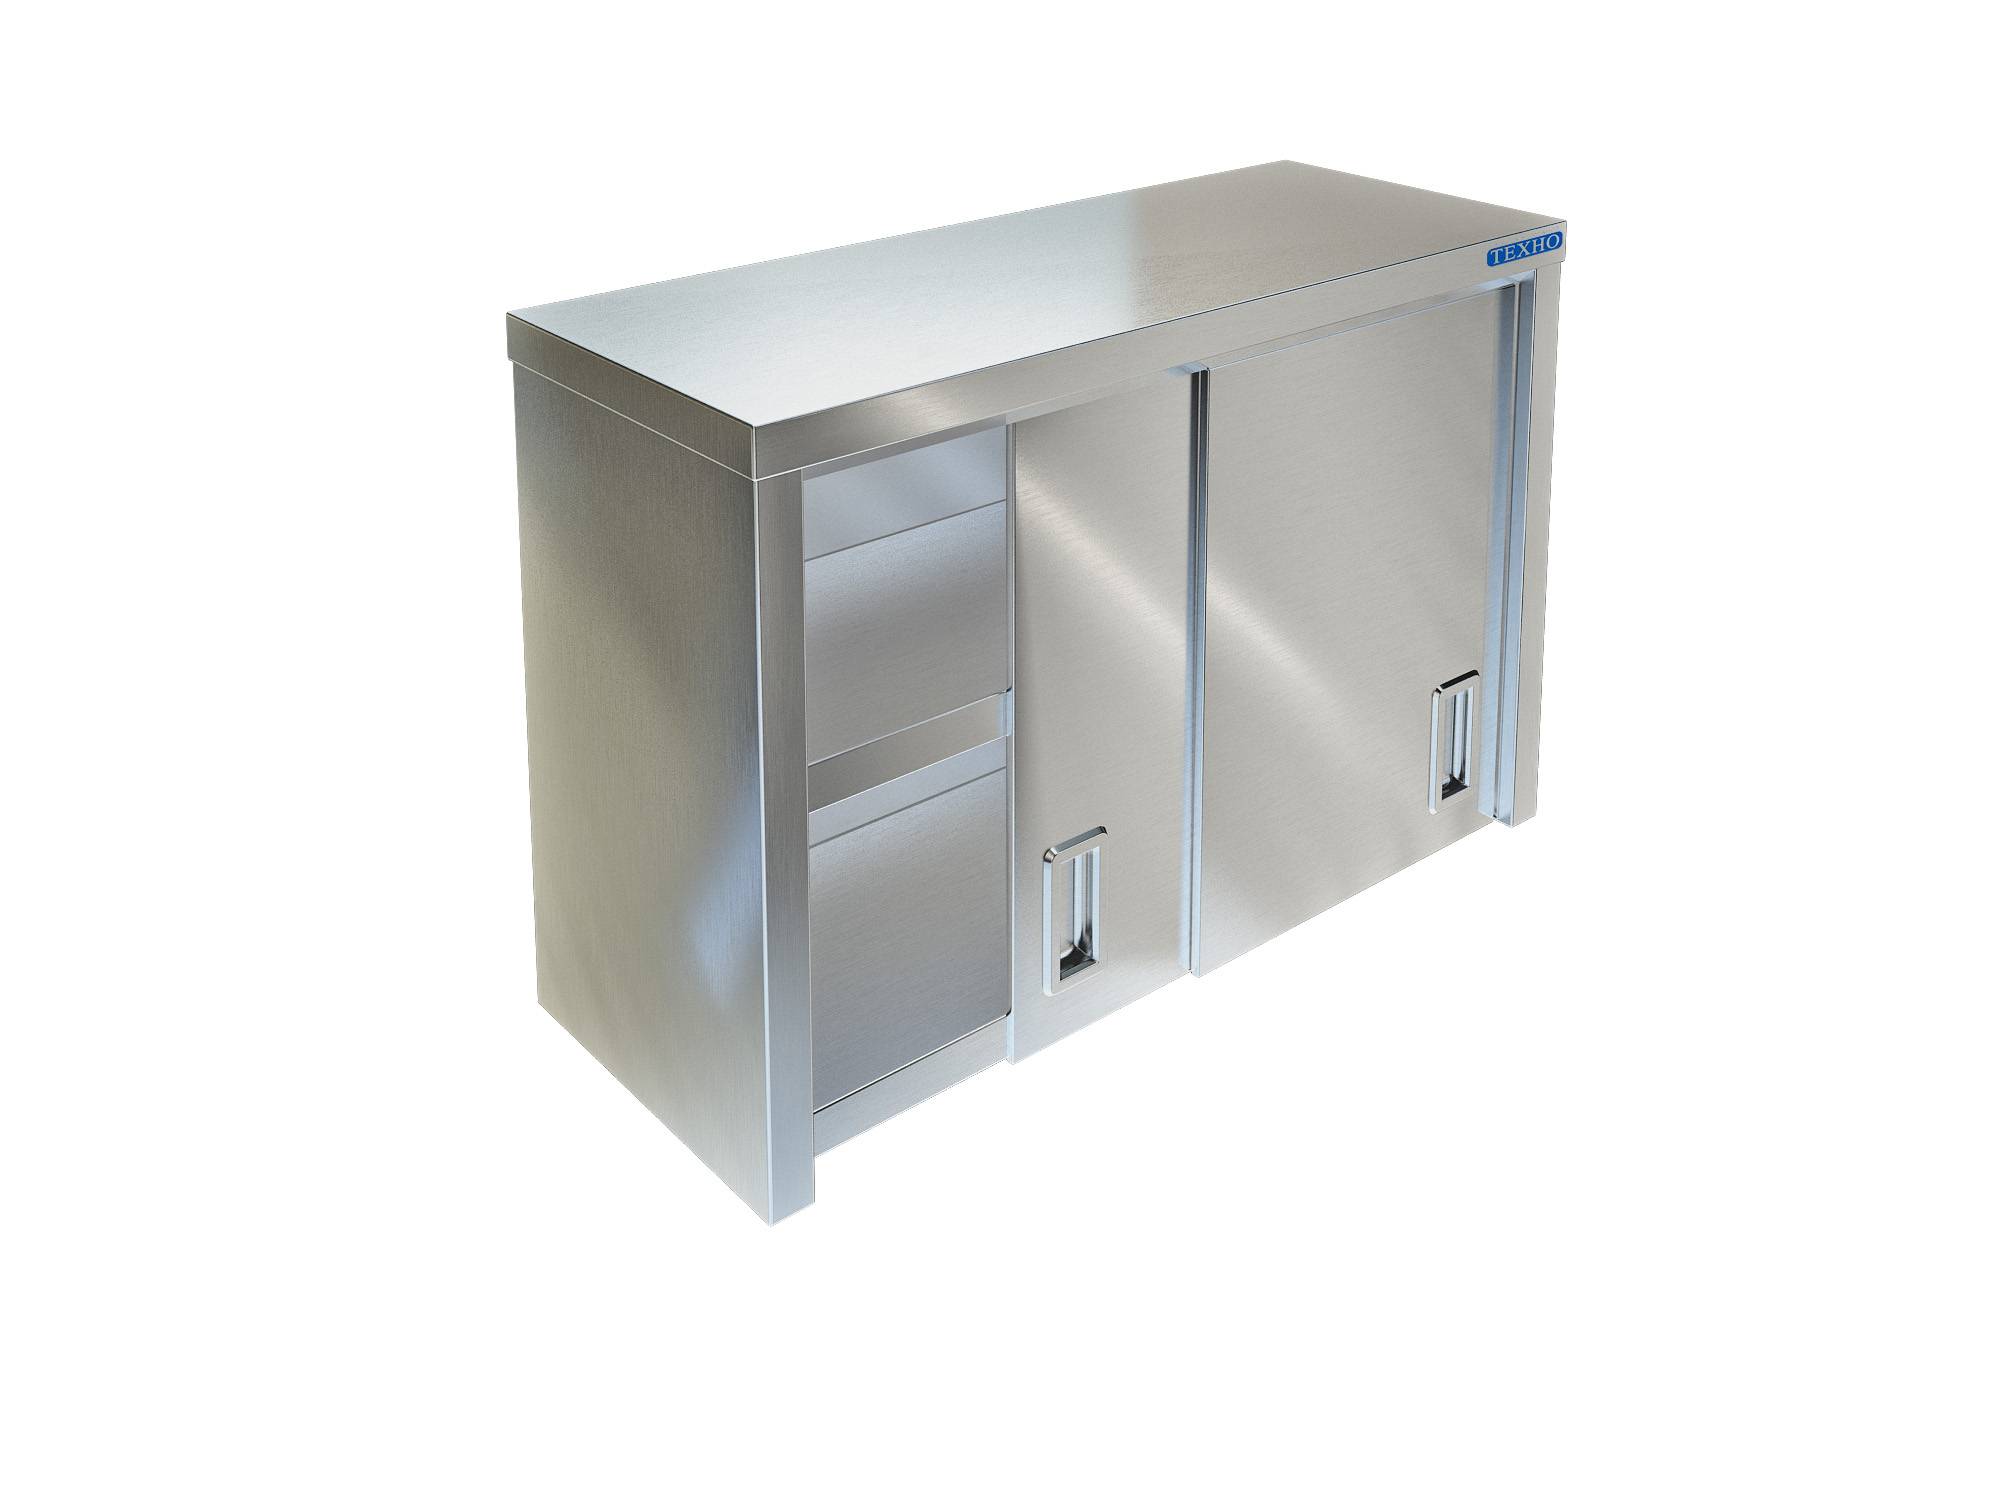 Фото - полка-шкаф для кухни с дверками из нержавейки пн-122/500 (500x350x600 мм)